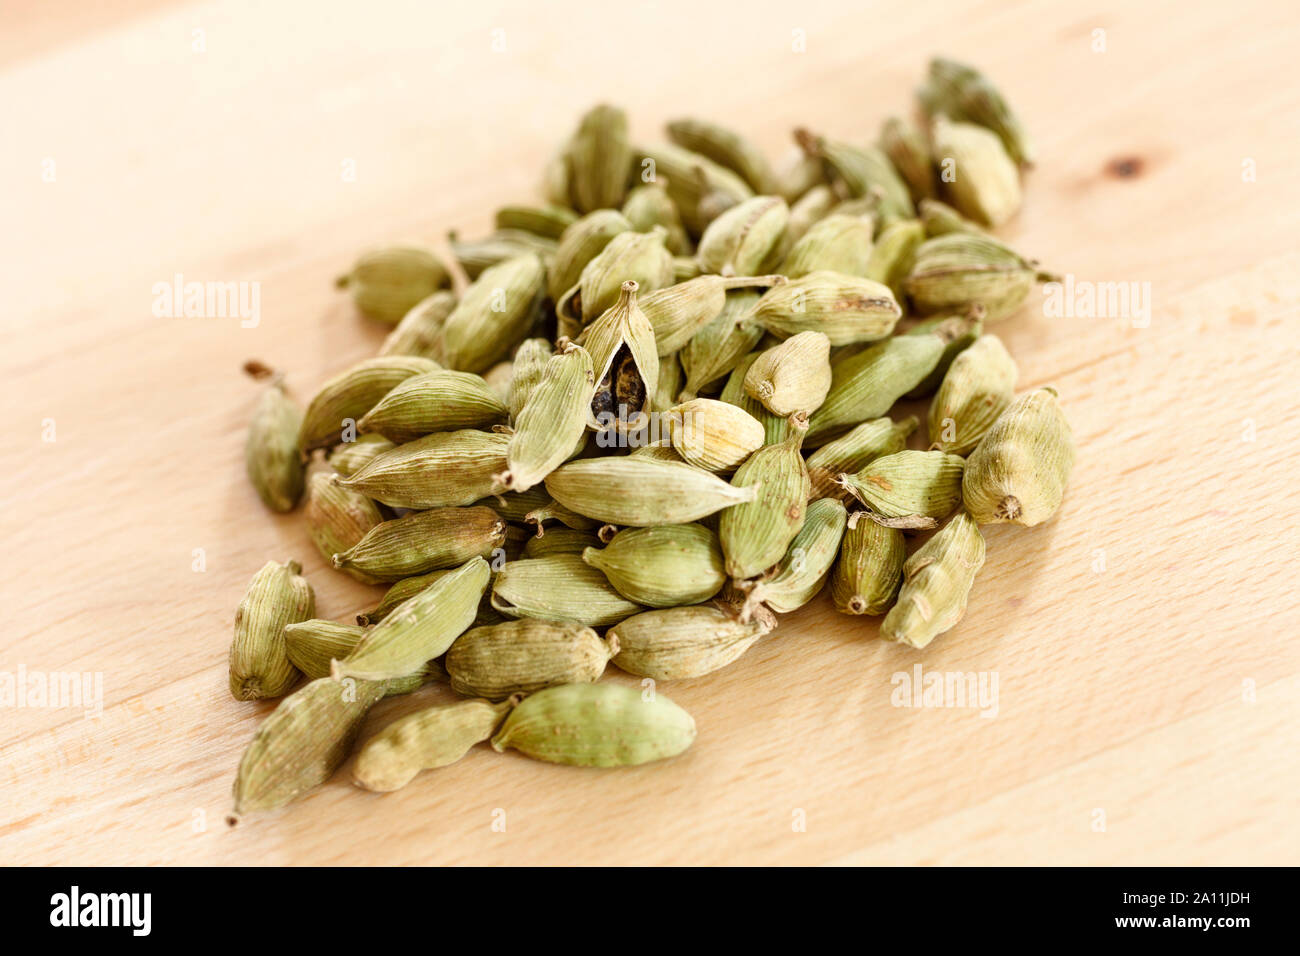 Las semillas de cardamomo en un montón sobre una superficie de madera Foto de stock